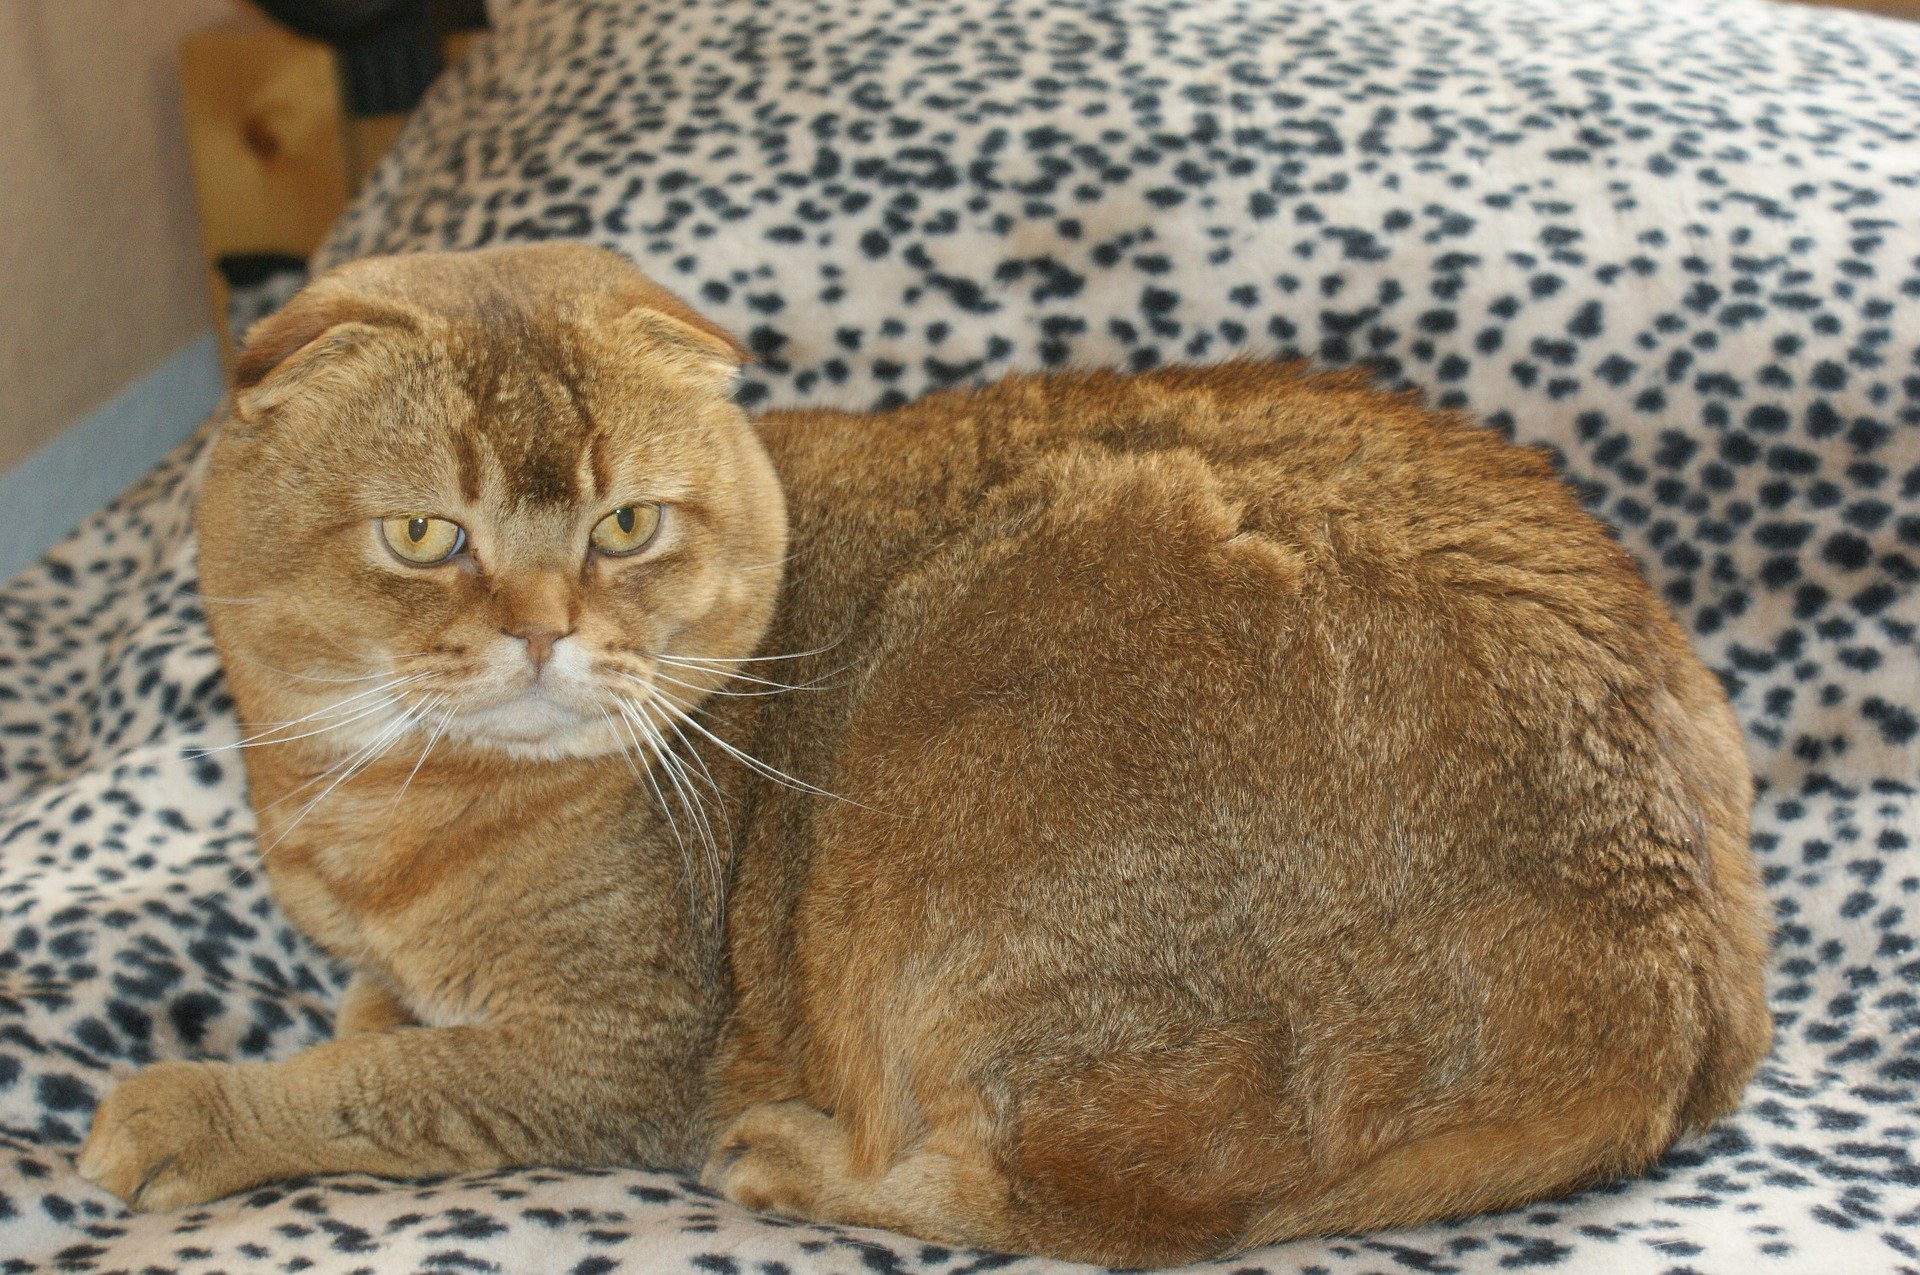 Le chat Scottish Fold est de taille moyenne et a des oreilles inhabituelles. Elles sont petites, arrondies et bien écartées.